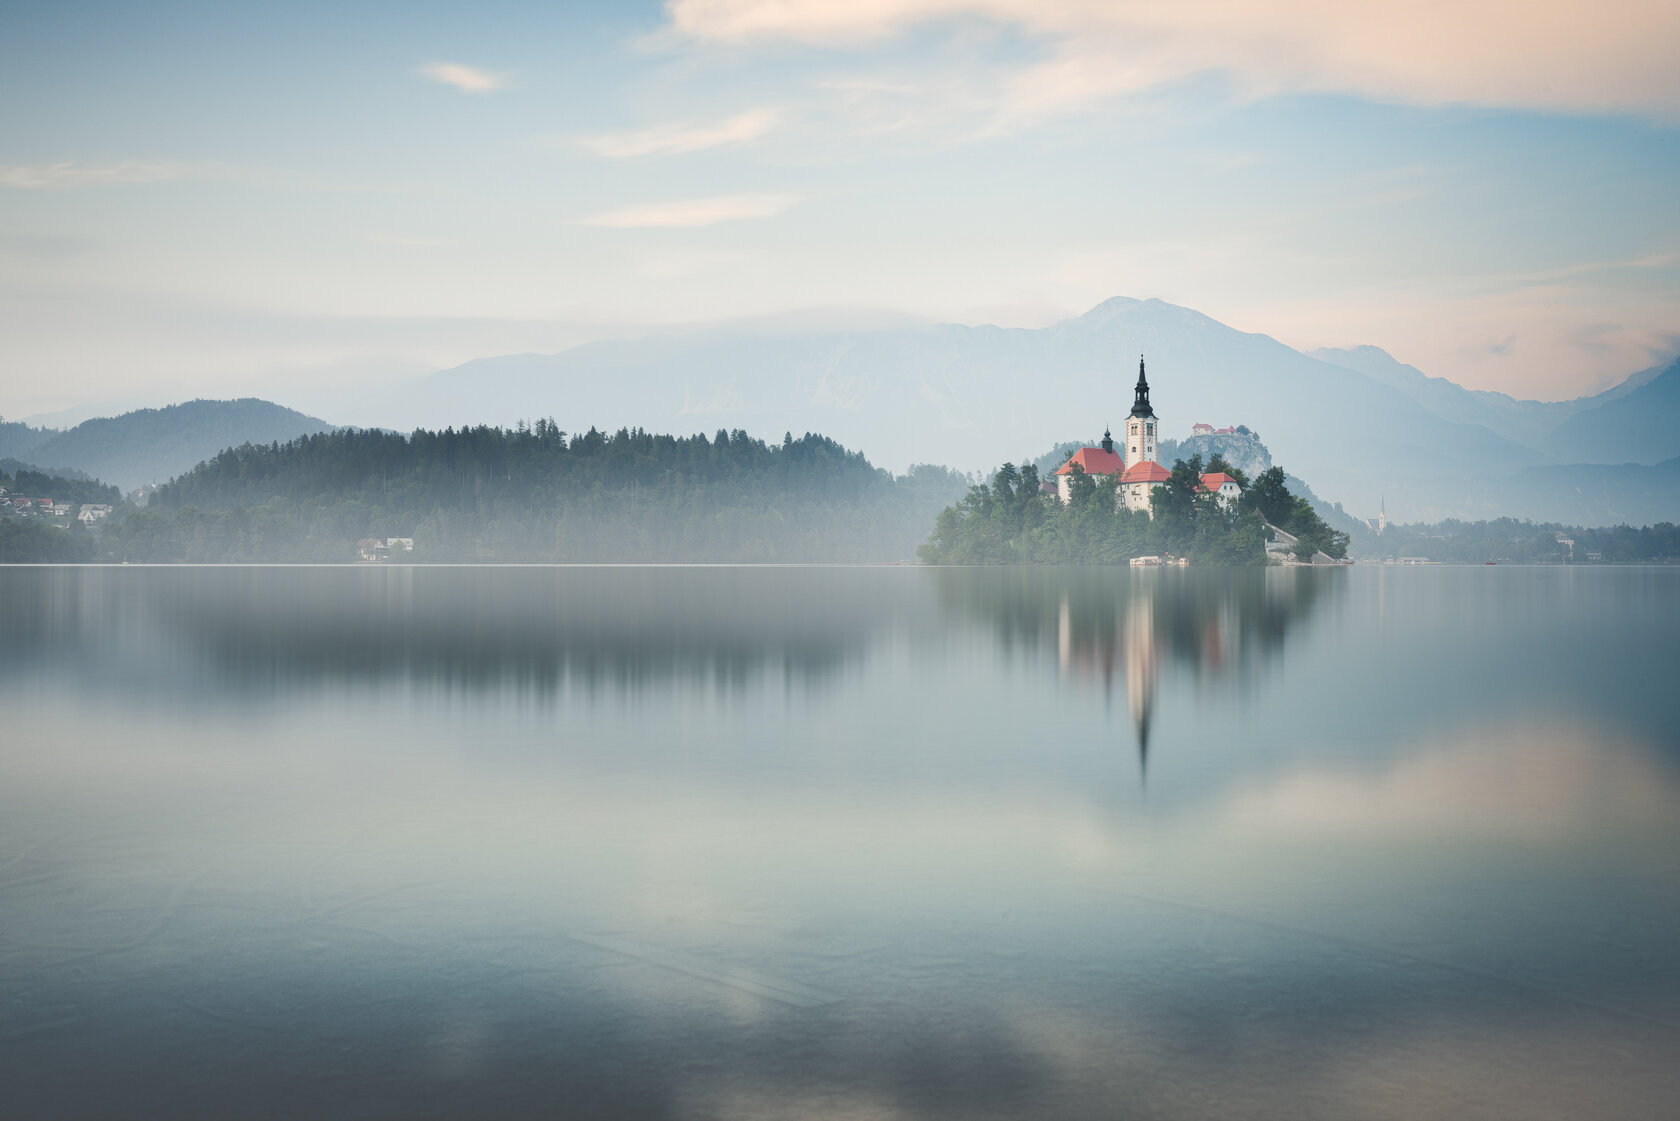 Lake Bled.jpg